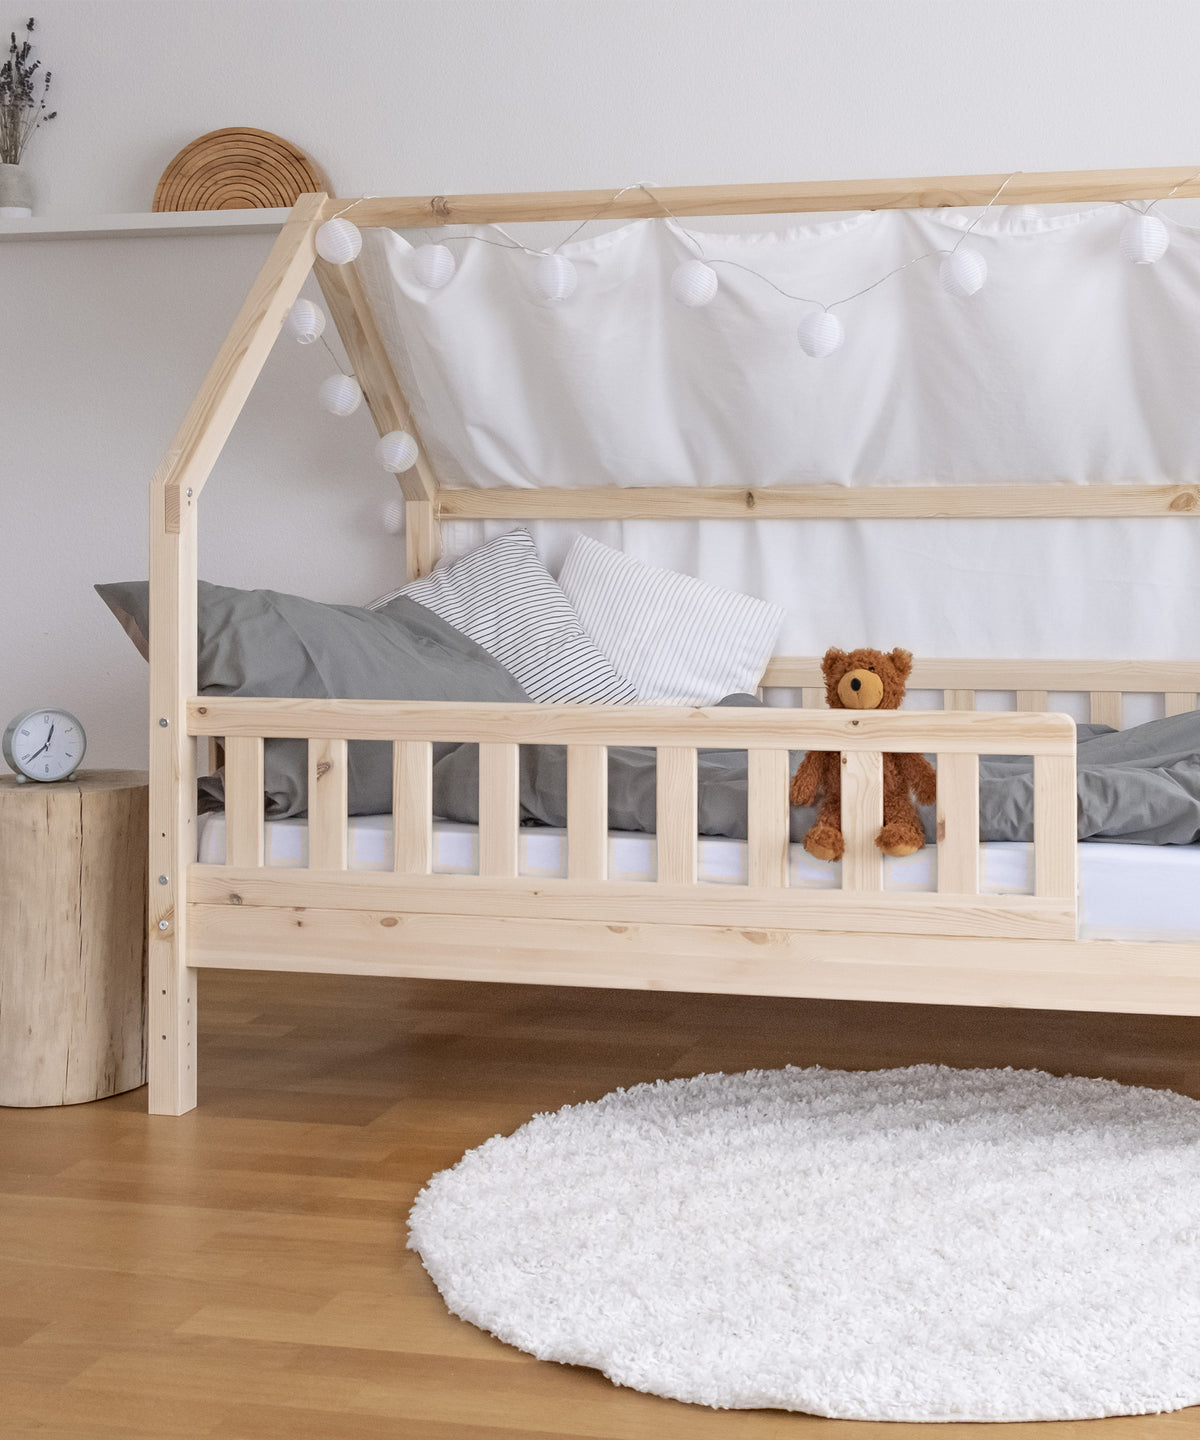 Hausbett Kiefer mit Betthimmel und Bettwäsche steht in Kinderzimmer.